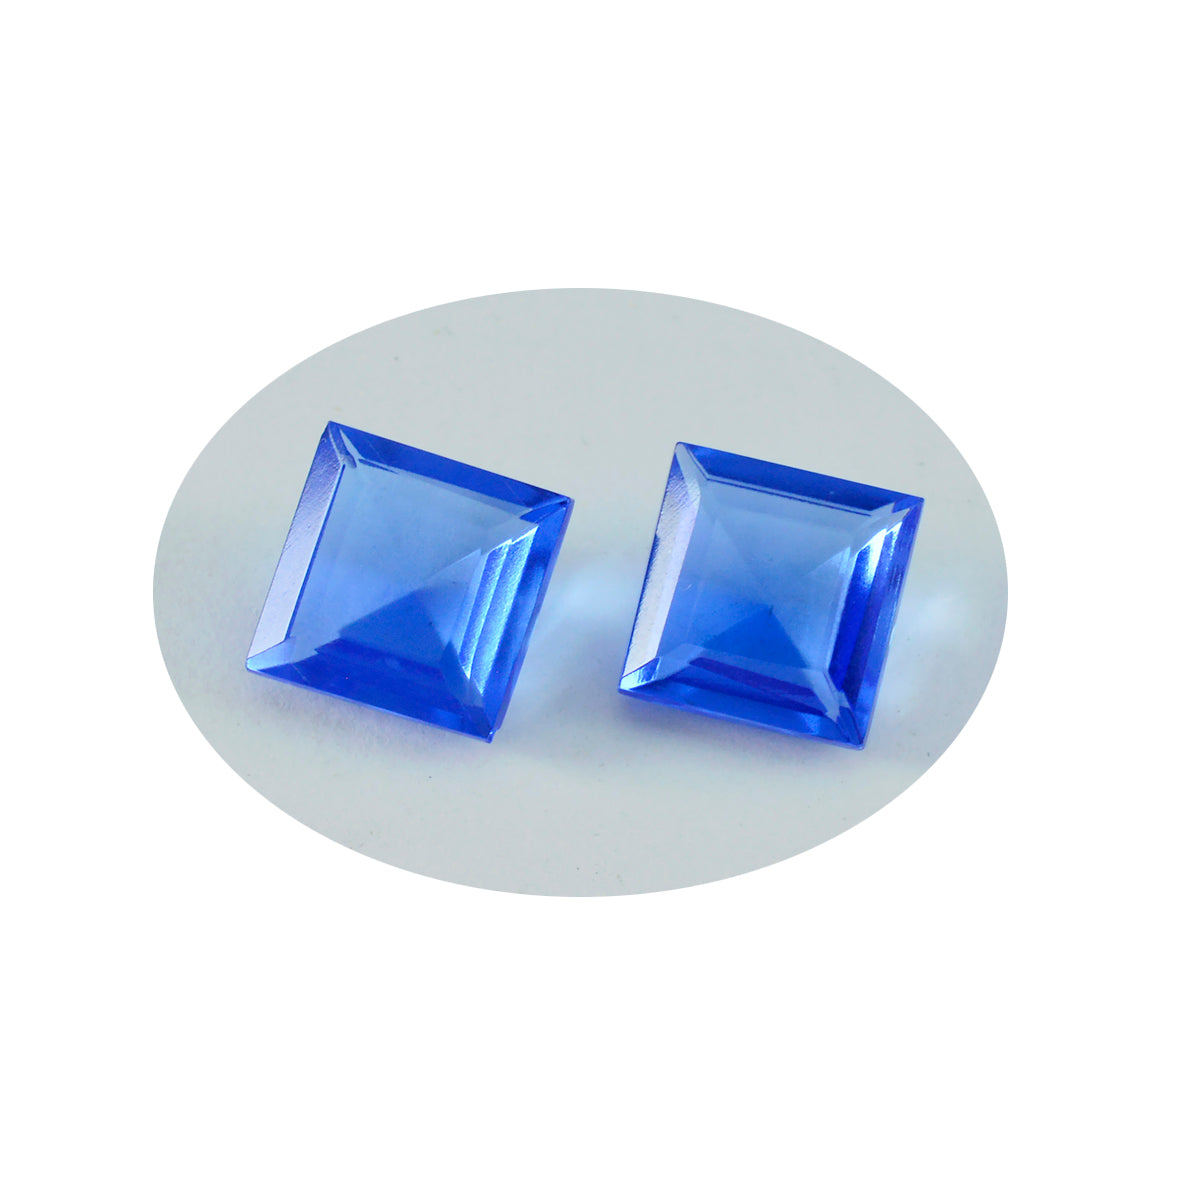 Riyogems 1 Stück blauer Saphir, CZ, facettiert, 13 x 13 mm, quadratische Form, ausgezeichnete Qualität, loser Edelstein